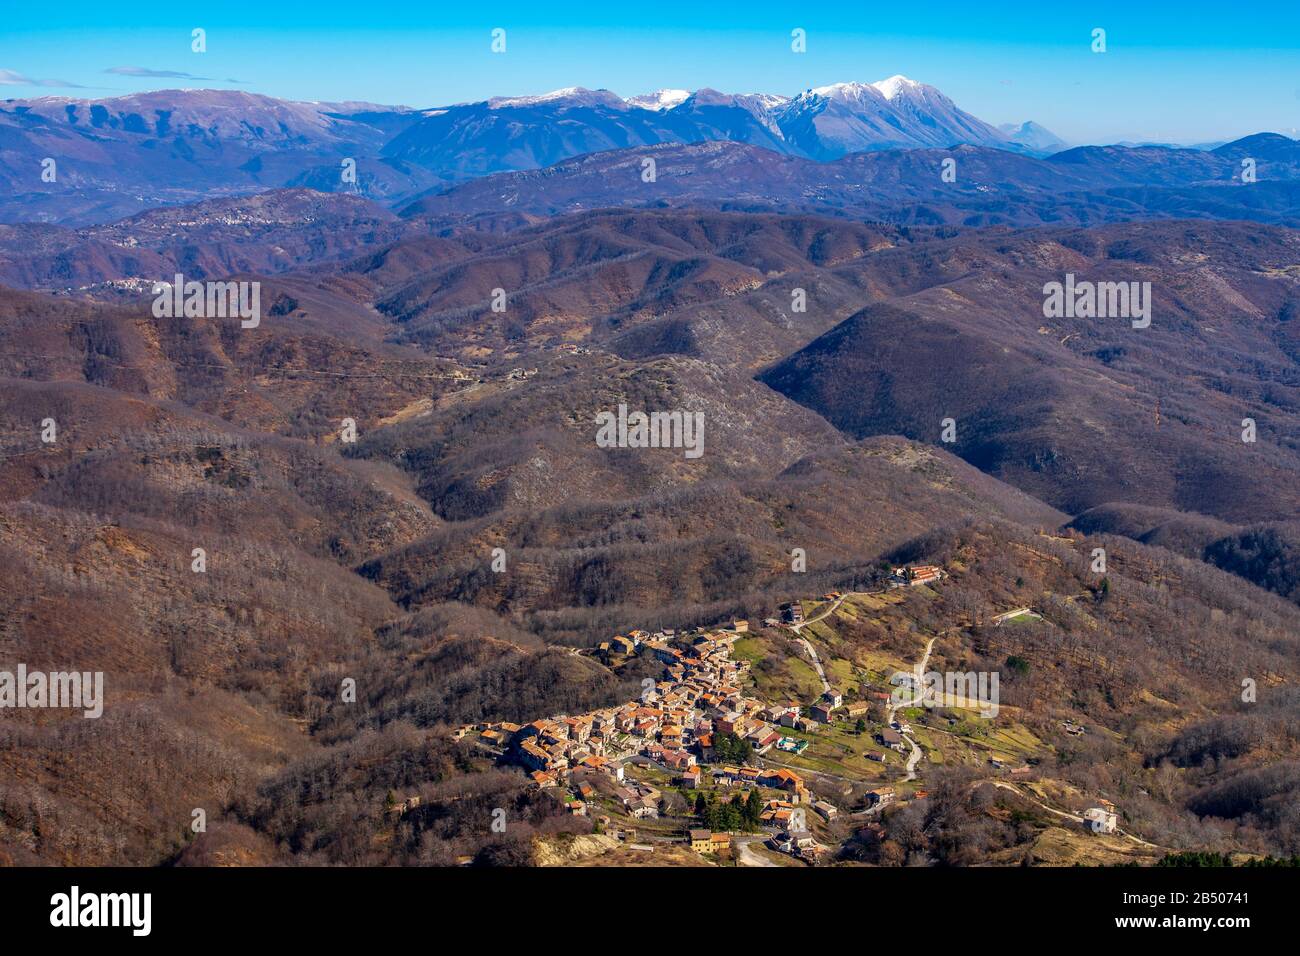 Panorama des Apennines centrales avec vue sur le groupe Monte Velino en arrière-plan Banque D'Images